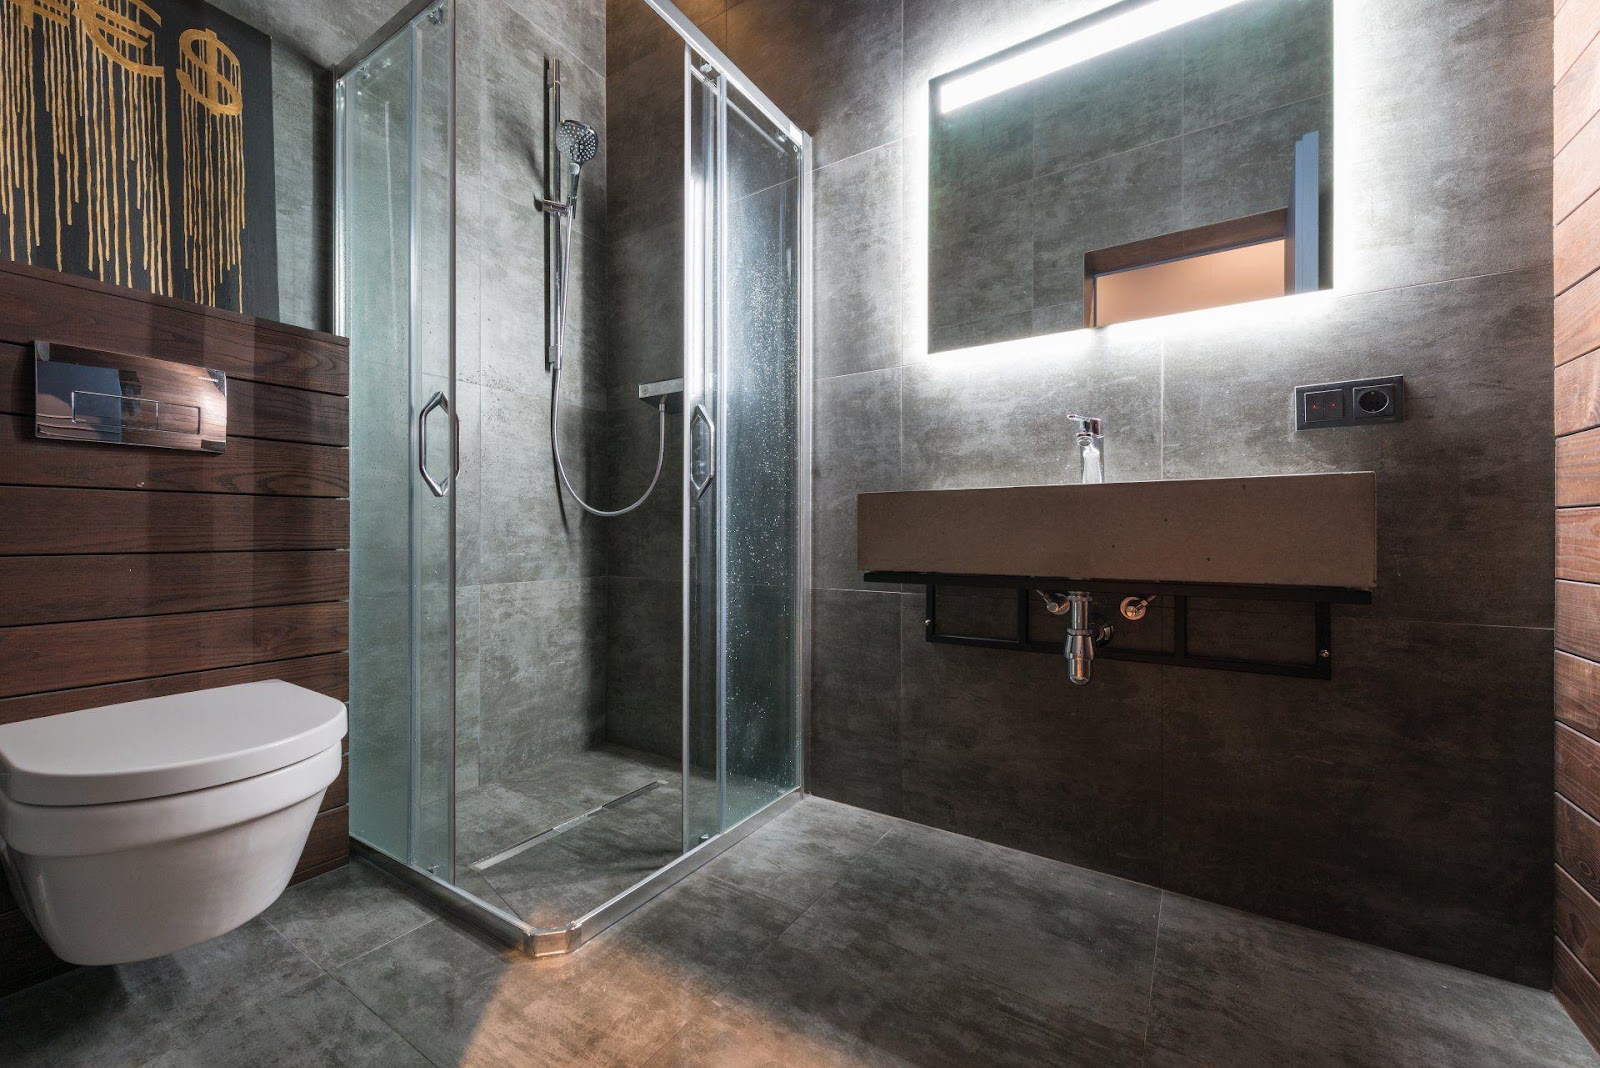 Uma imagem com casa de banho, interior, sanita, sala

Descrição gerada automaticamente